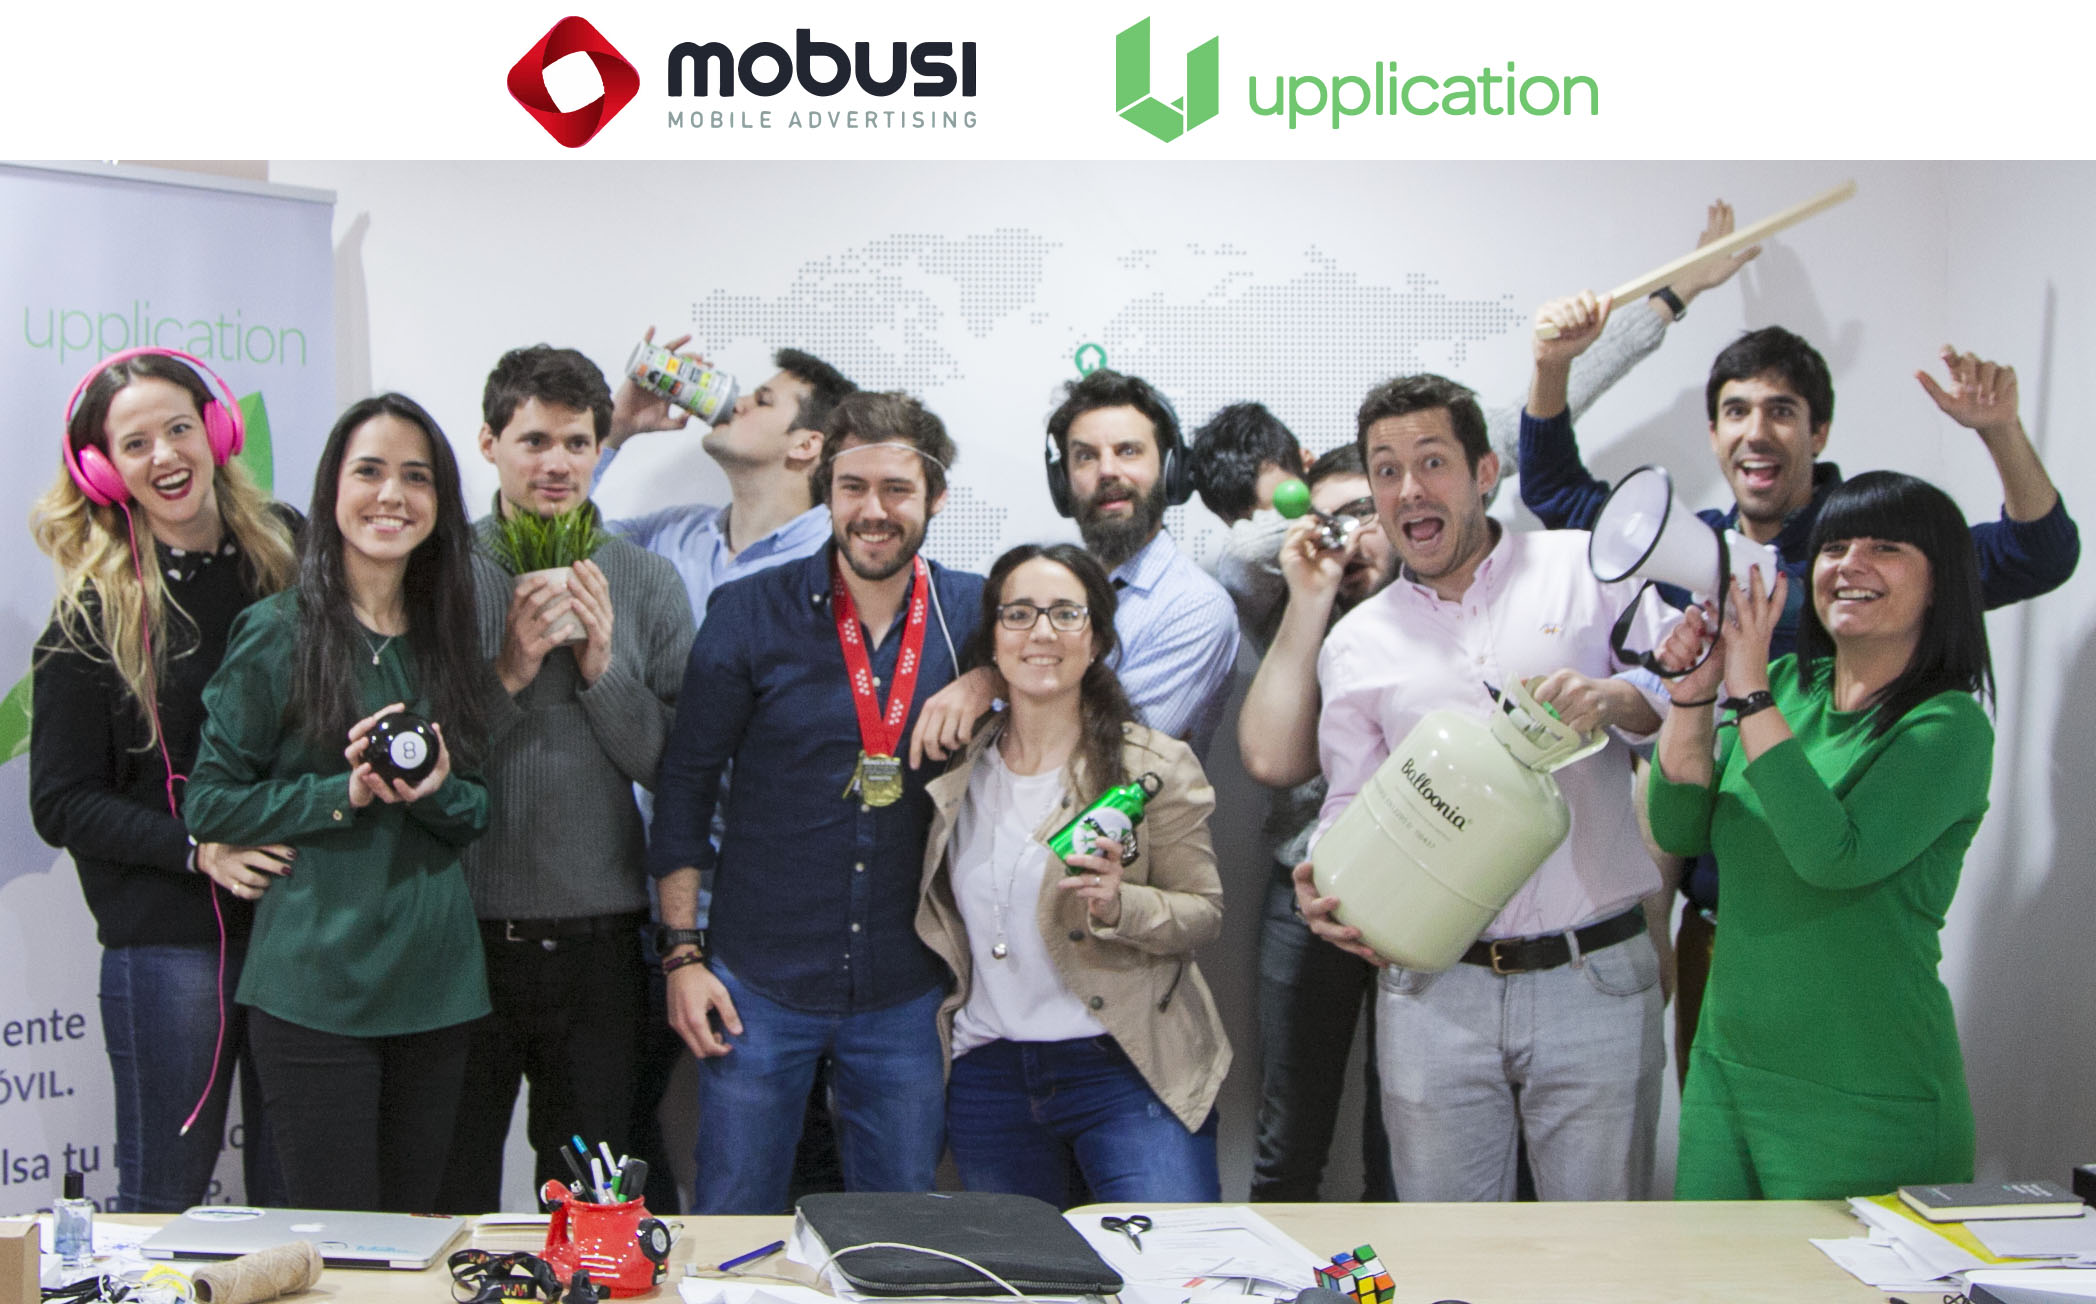 La empresa de publicidad en vídeo y móvil mobusi adquiere Upplication